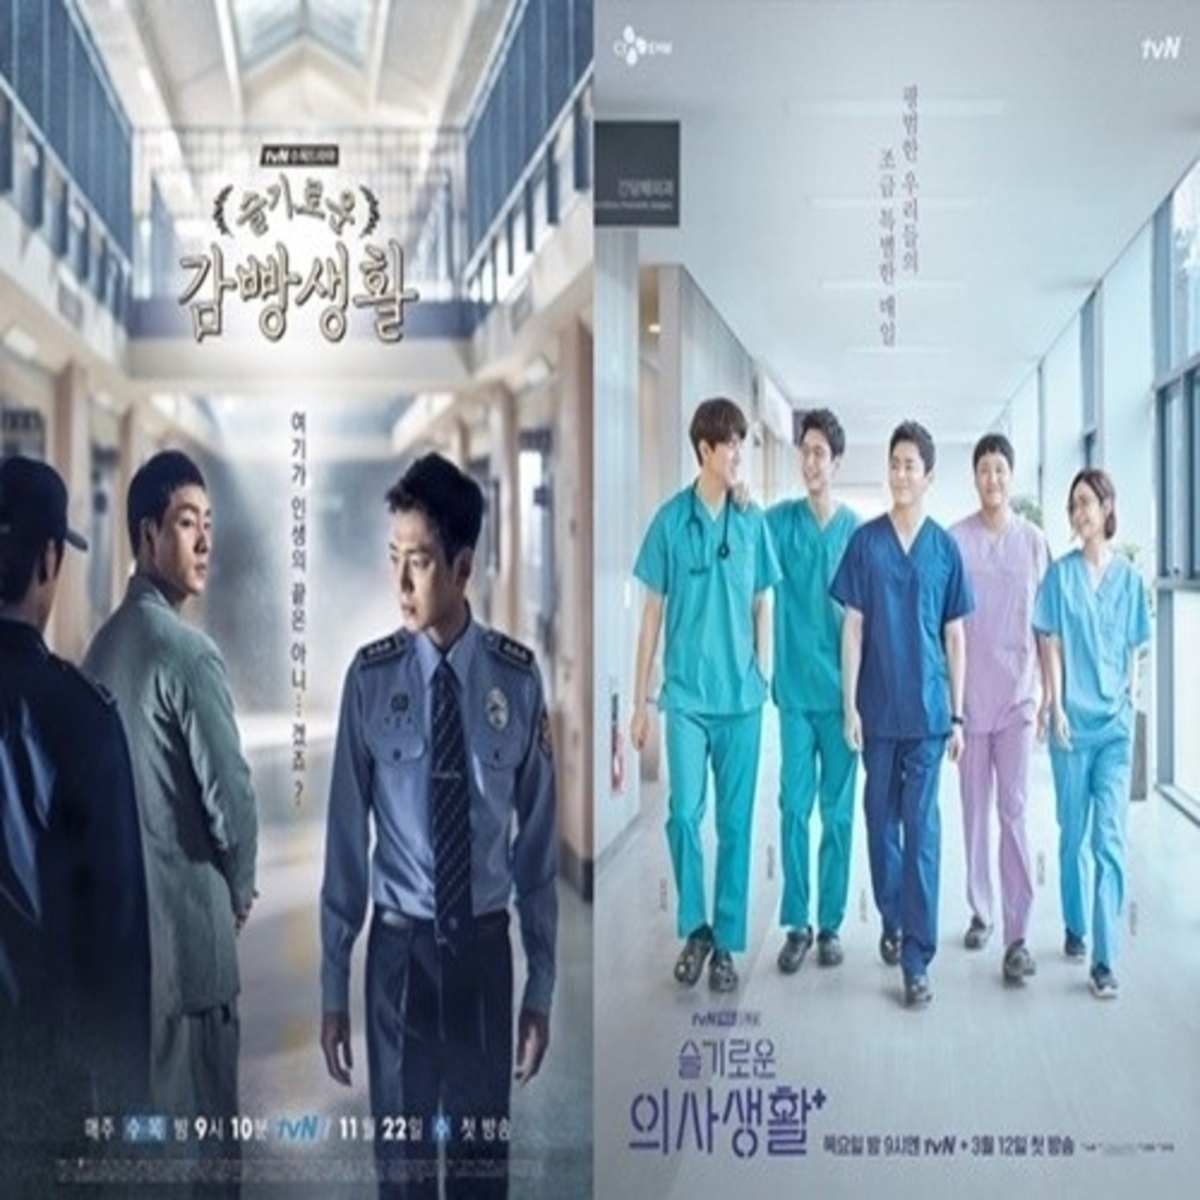 韓国ドラマのキャストかぶりも楽しい 賢い医師生活 刑務所のルールブック ラケット少年団 に共通するヒューマンドラマの真髄 Vol 2 Kstyle